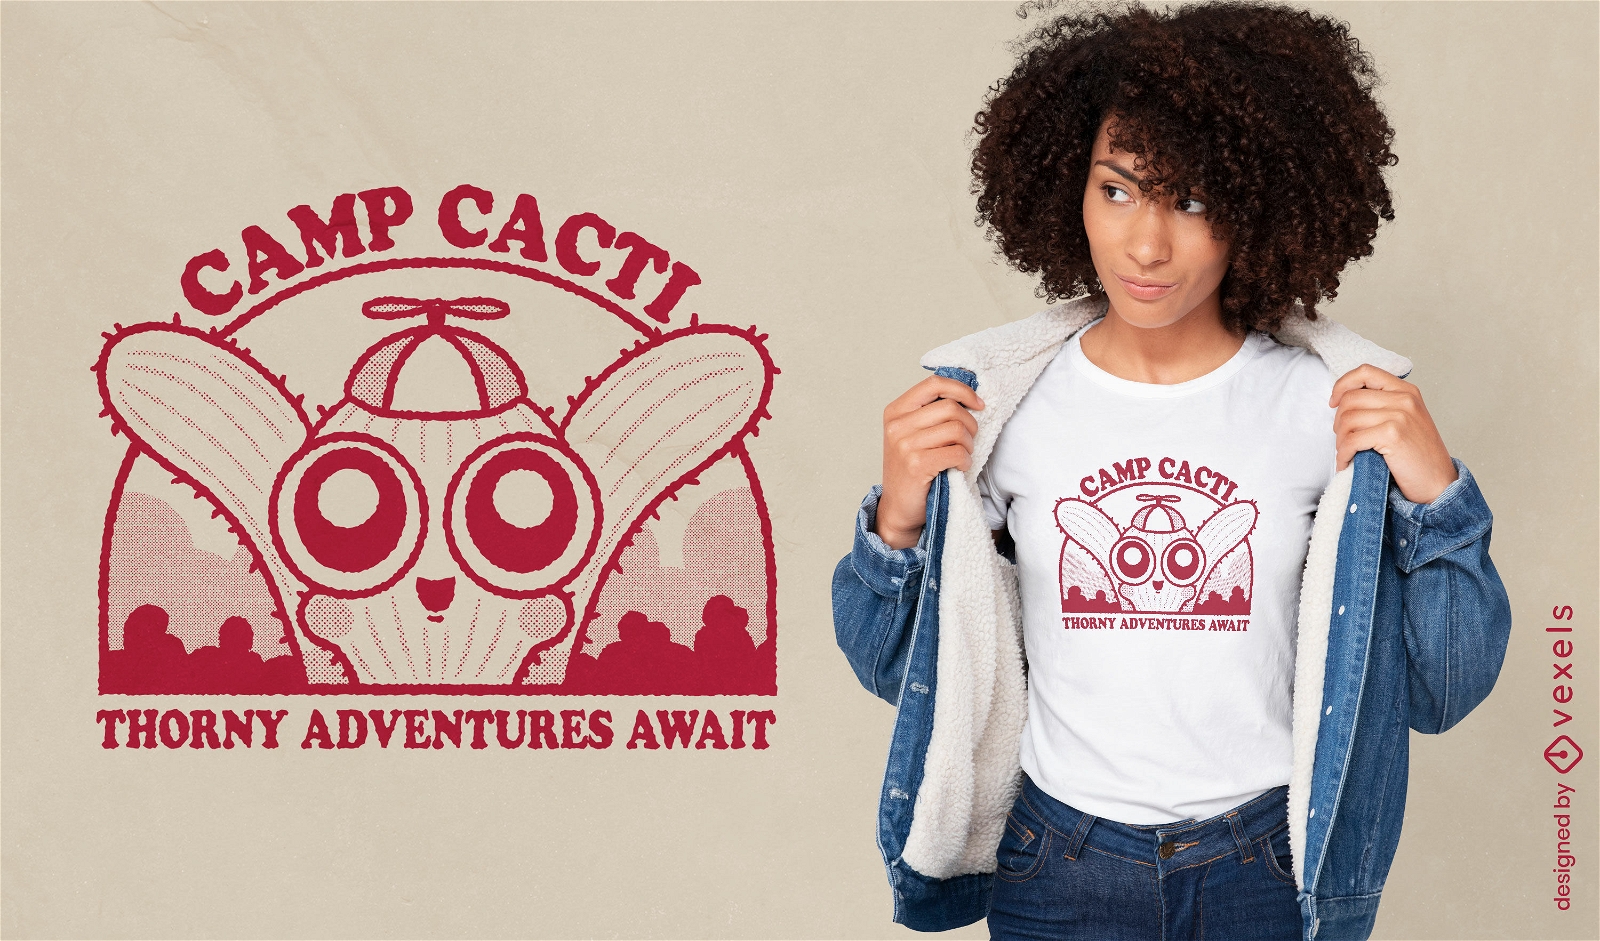 Adventurous cacti camp t-shirt design